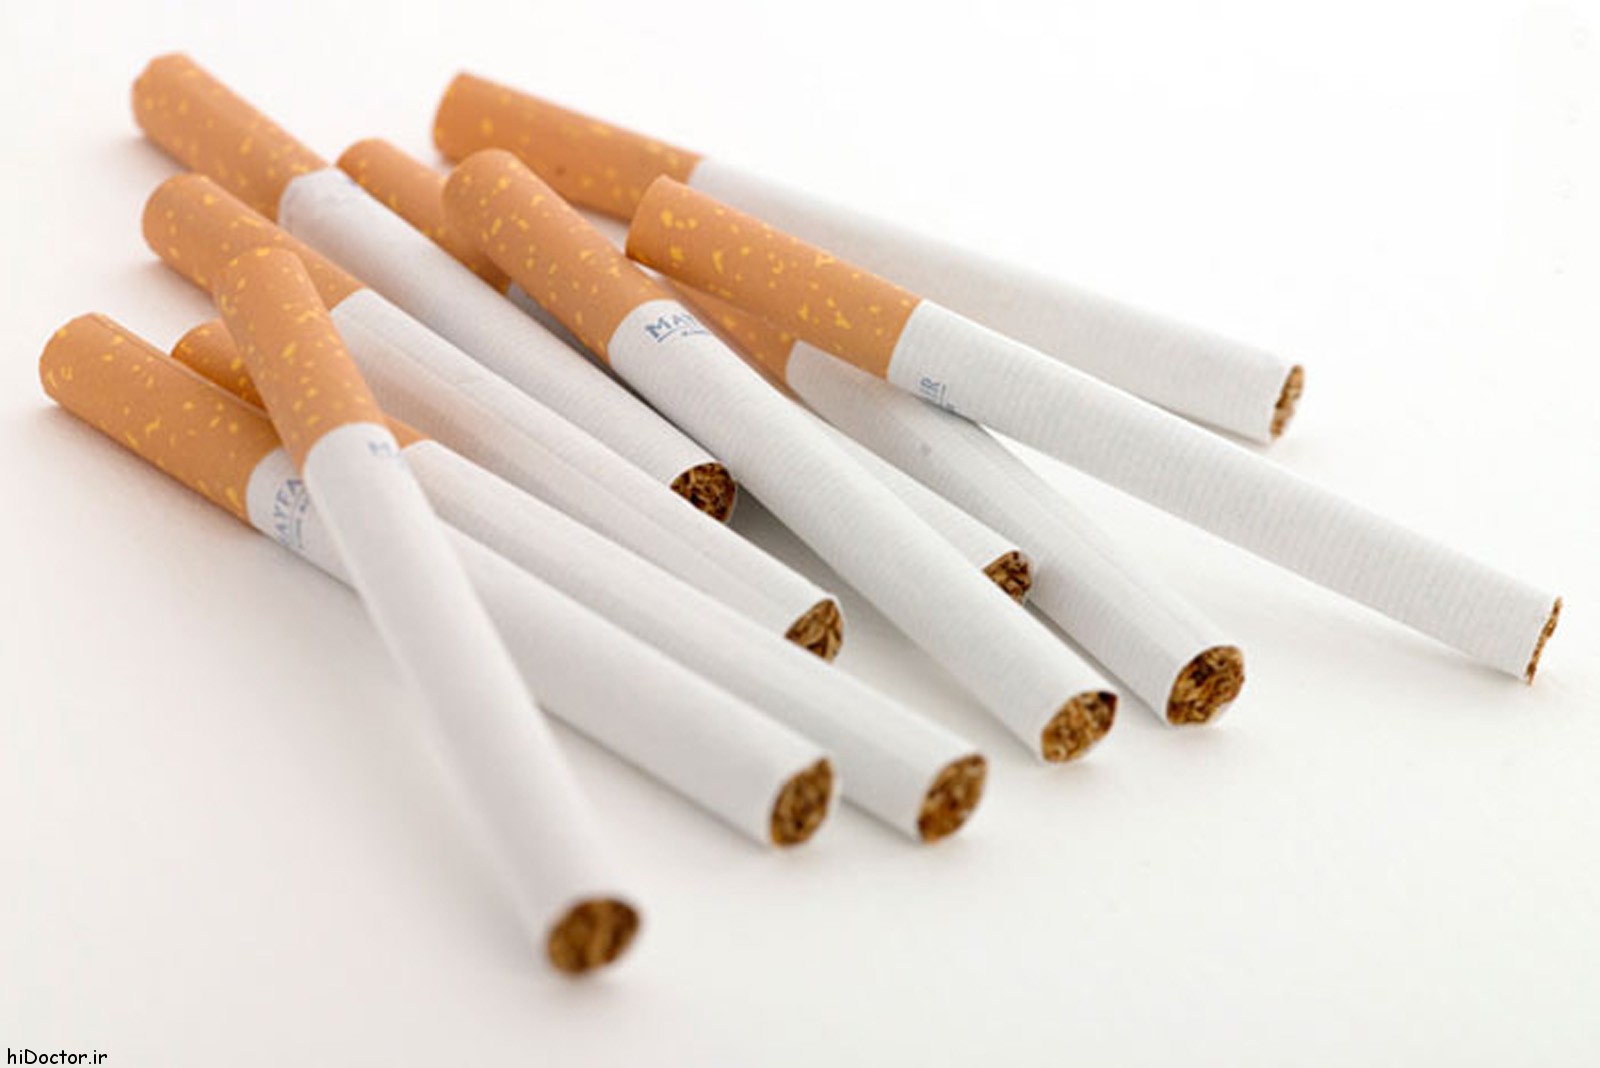 ۳ هزار نخ سیگار قاچاق از یک دکه مطبوعاتی در کرج کشف شد